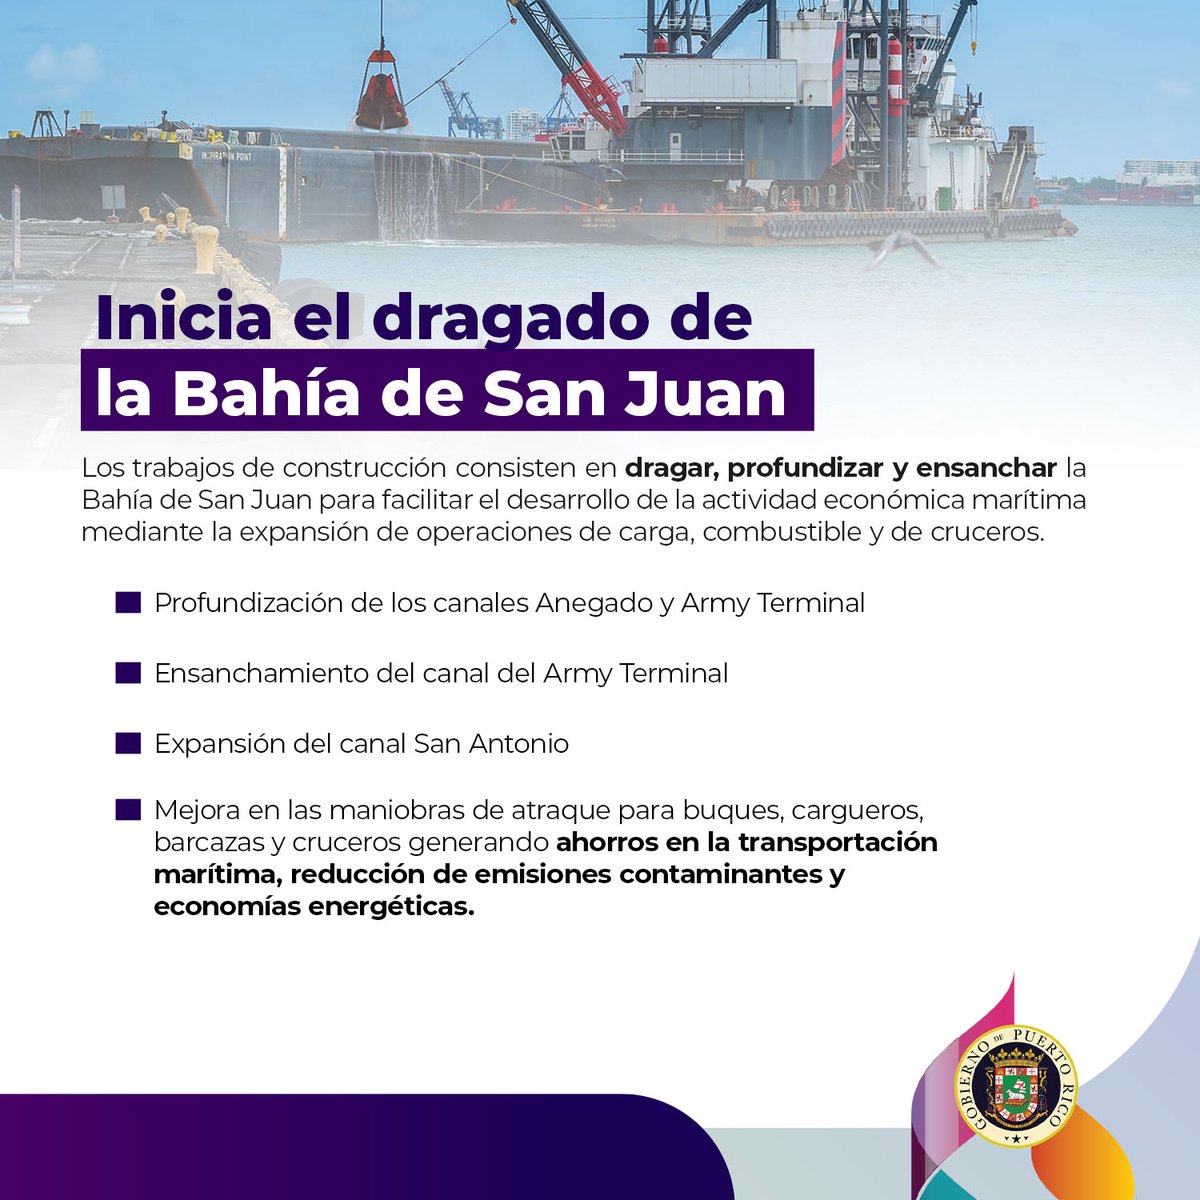 En un esfuerzo colaborativo entre la @PuertosPR y el @USACEHQ, se dio inicio a los trabajos de dragado en la Bahía de San Juan para profundizar y ensanchar los canales de navegación. Este proyecto facilitará las operaciones de carga y los servicios de buques, cargueros, barcazas…